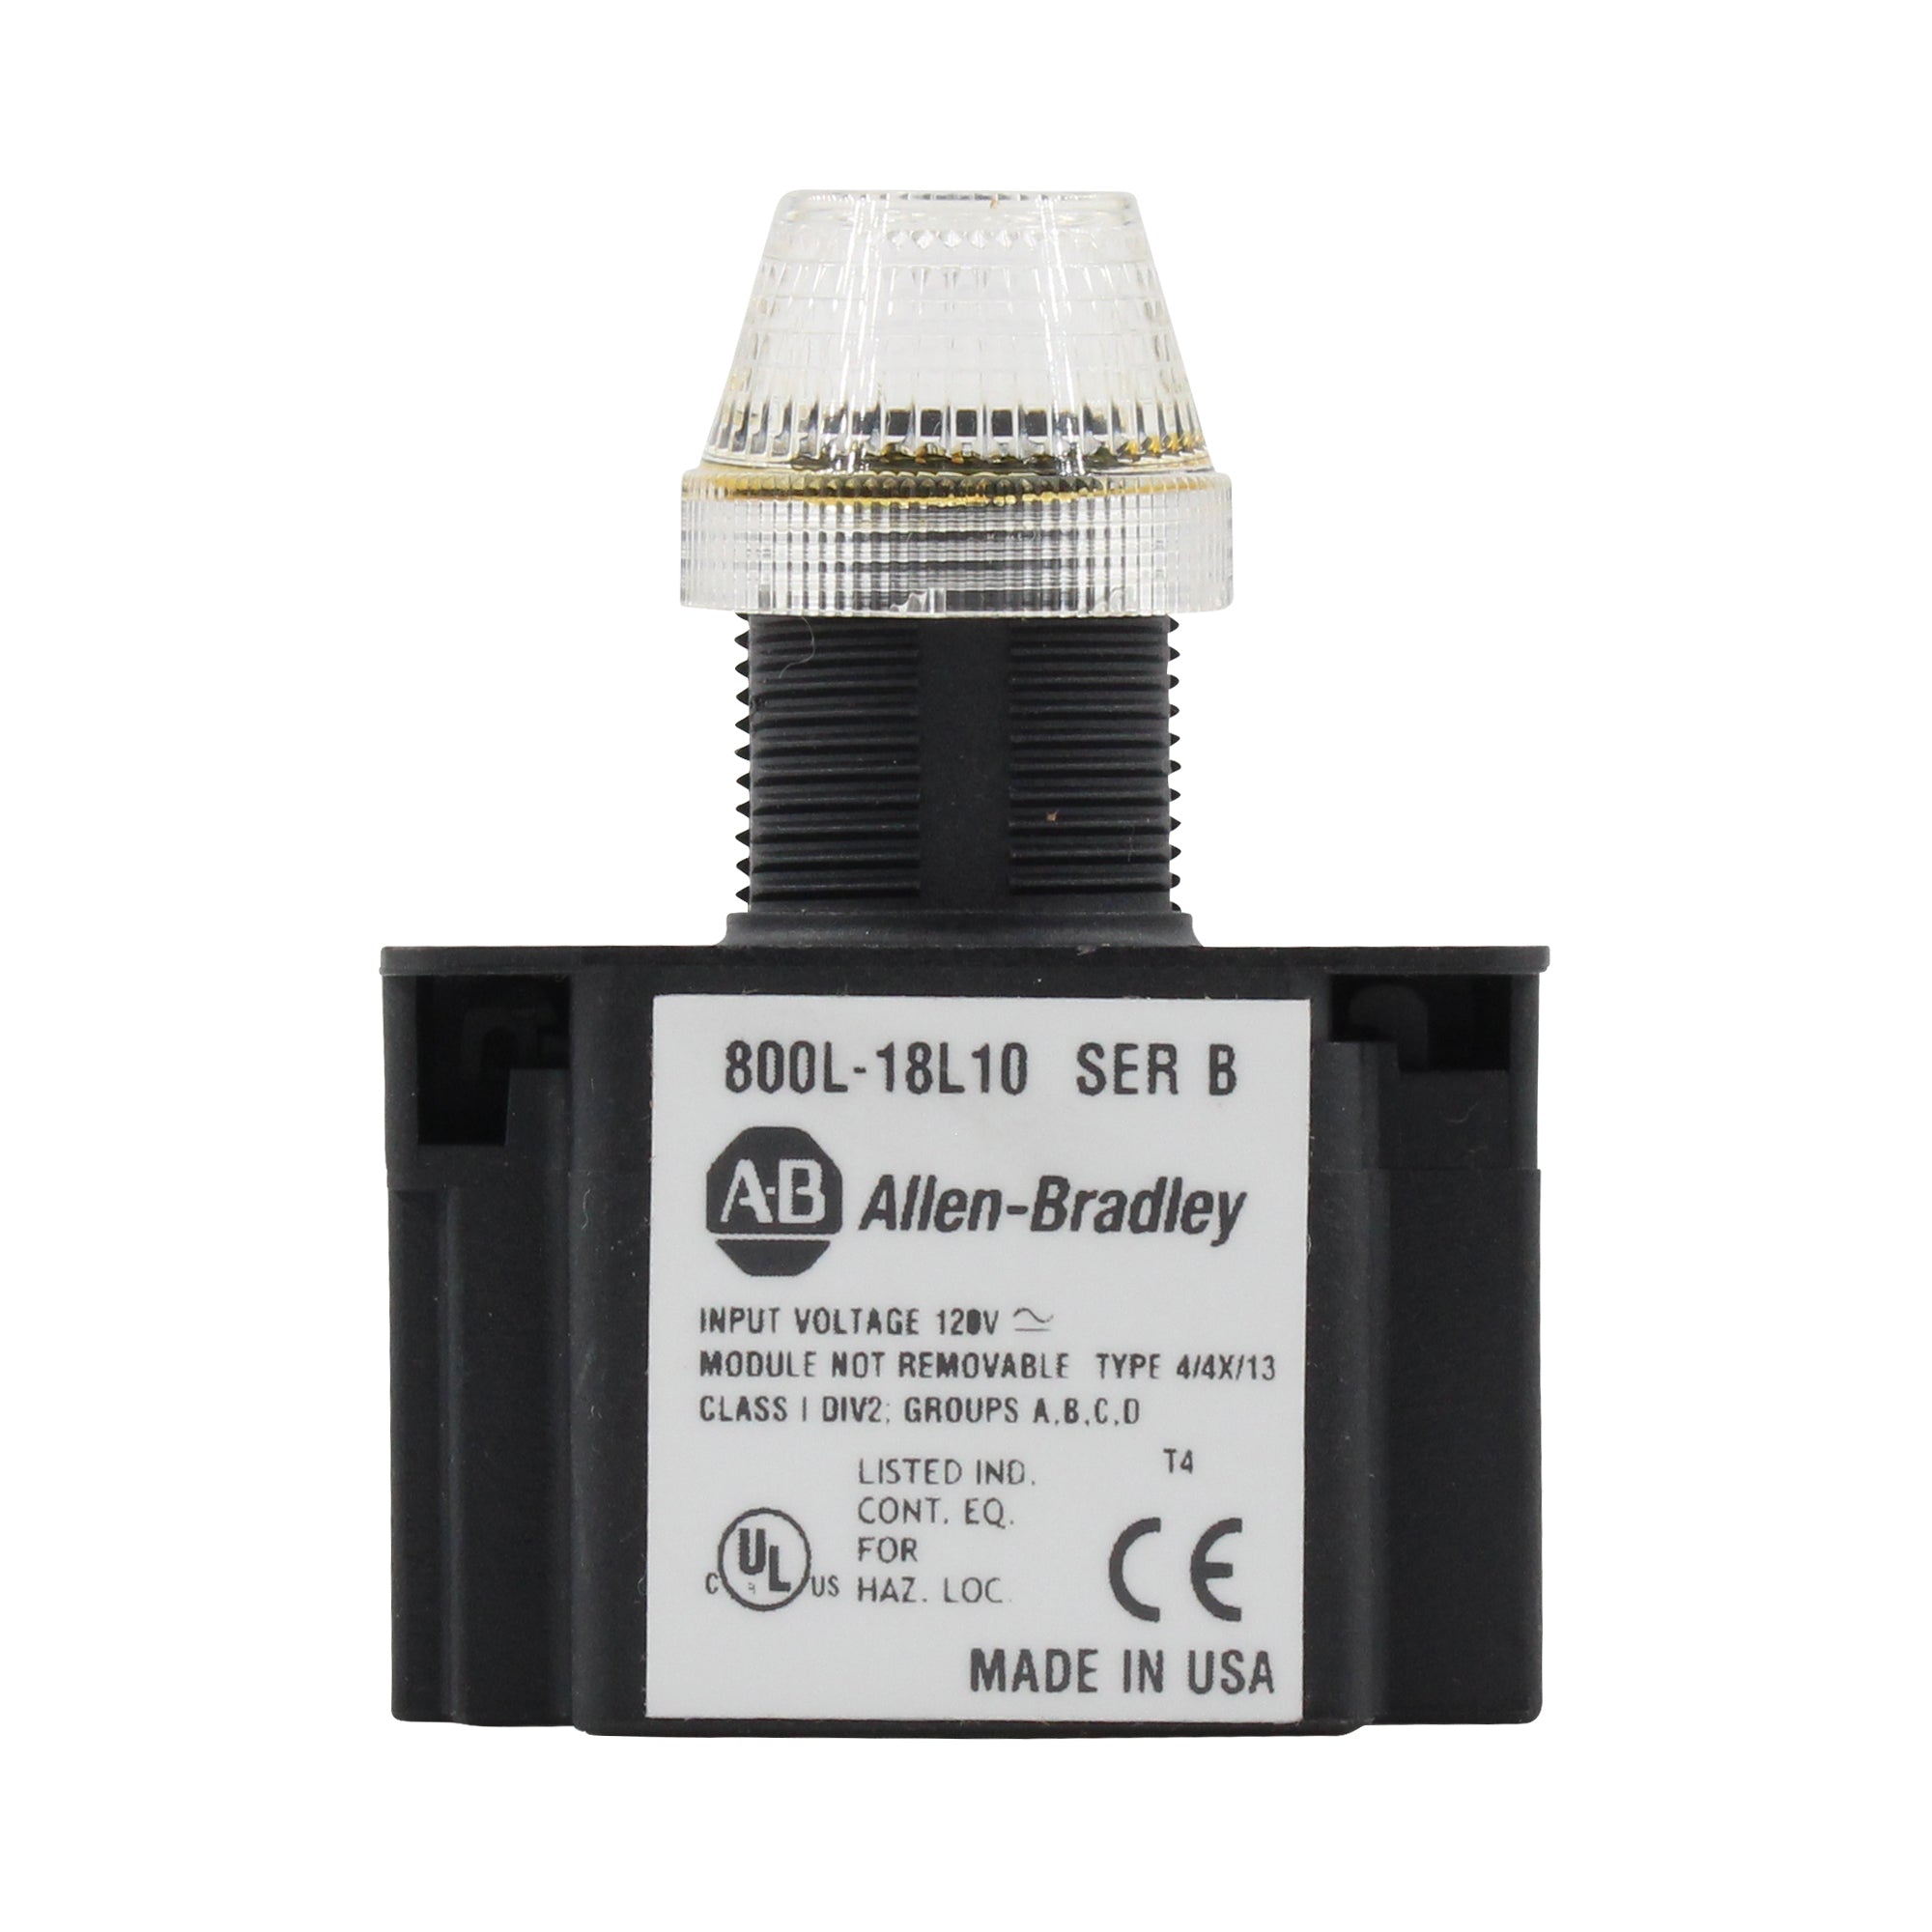 Allen Bradley Group, ALLEN BRADLEY 800L-18L10G GREEN LED INDICATOR LIGHT, SERIES-B, 18MM, 120V